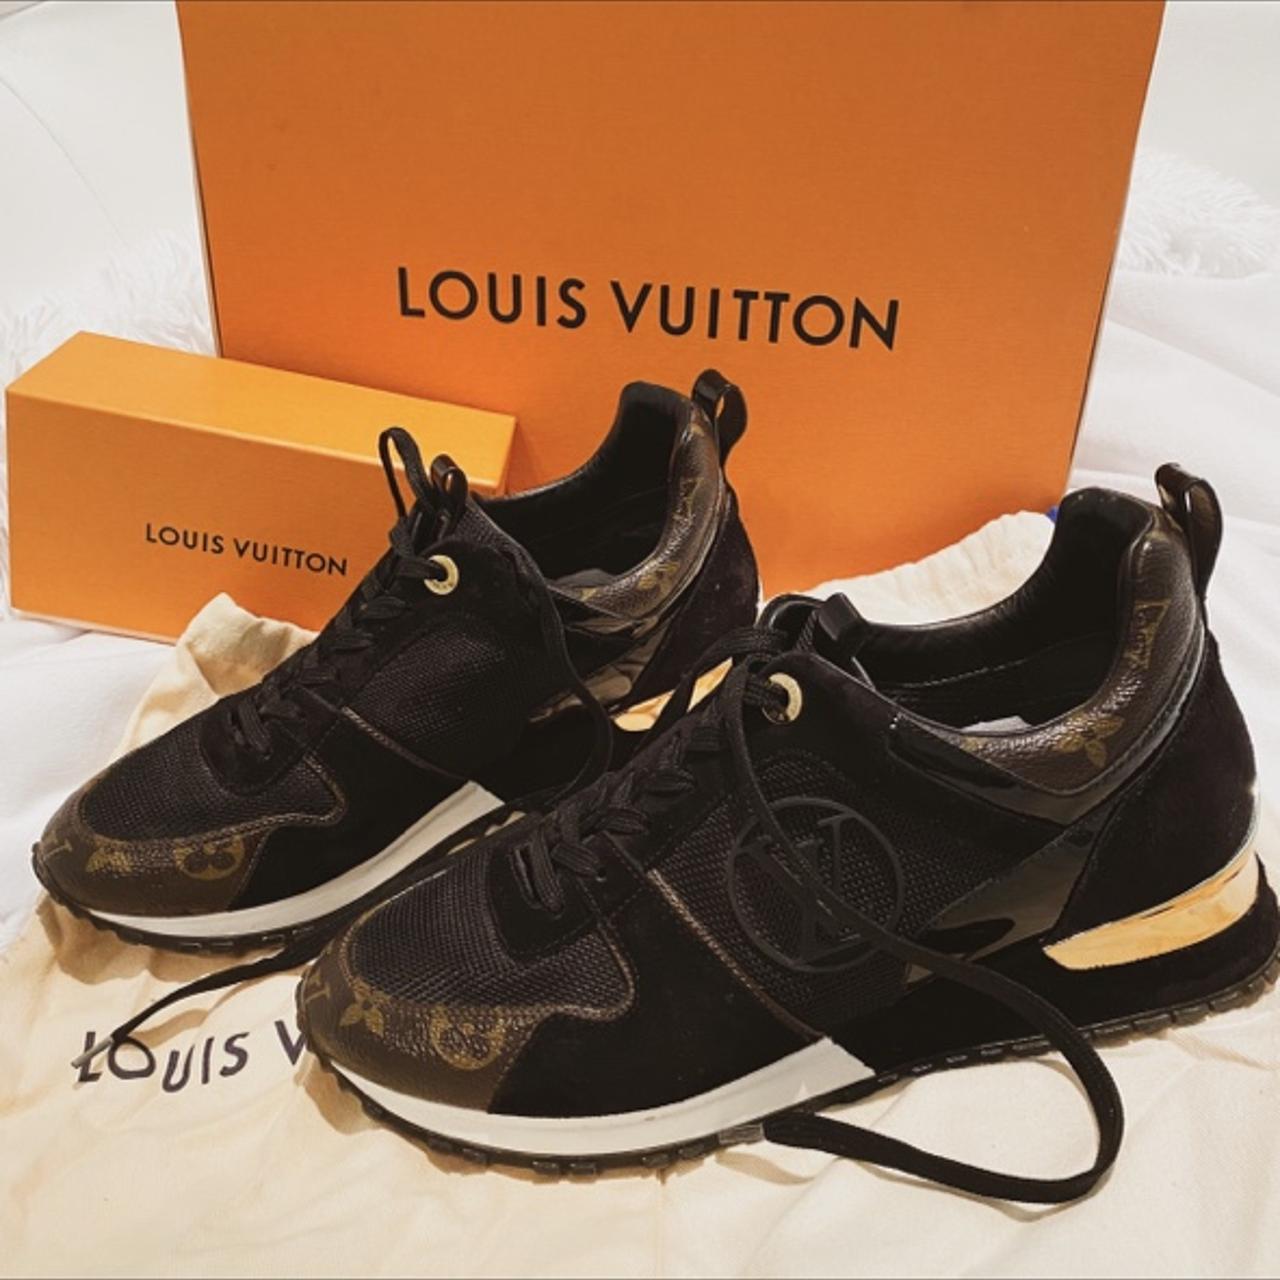 Louis vuitton run away sneaker black size 38